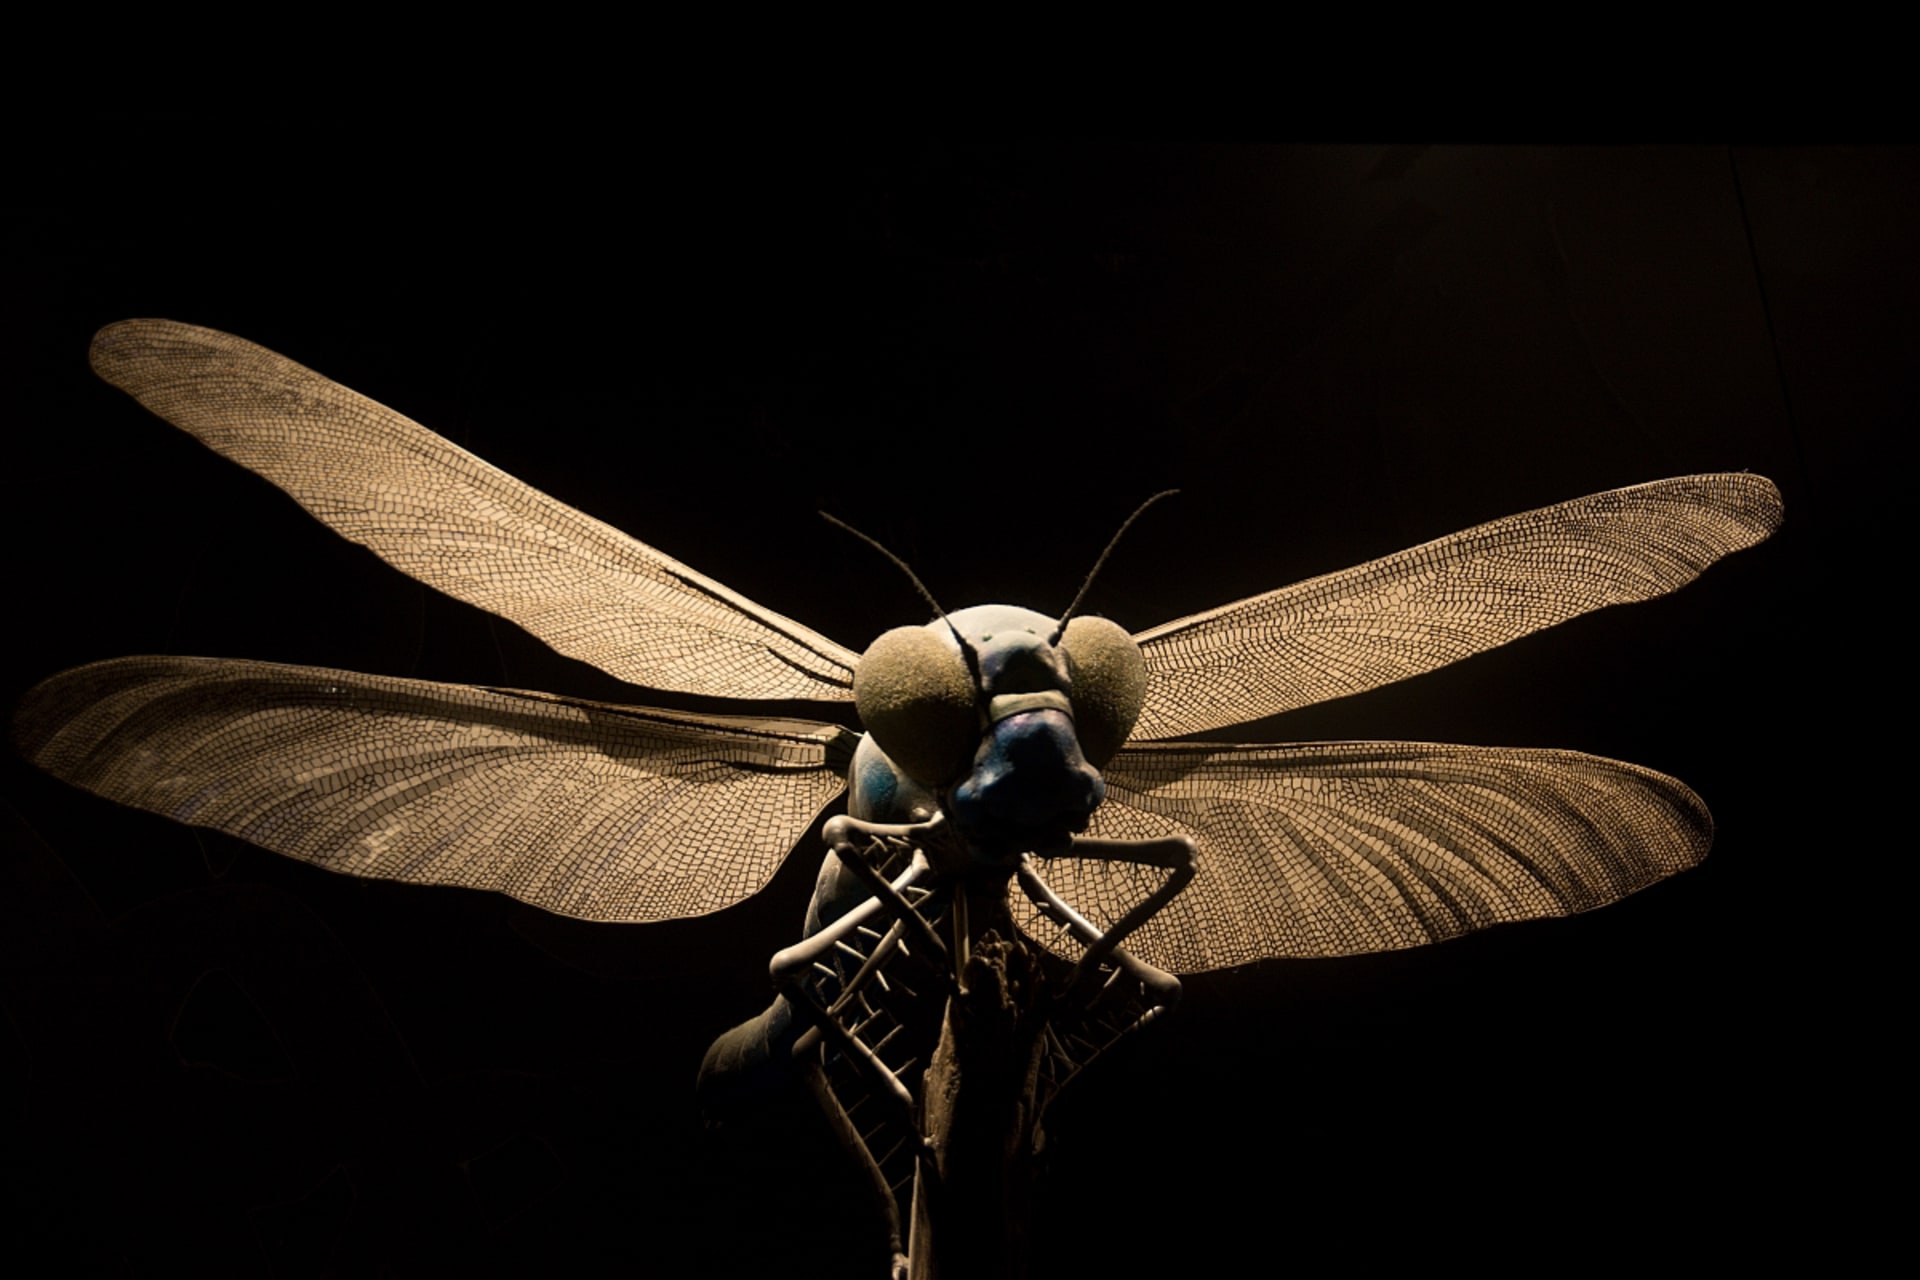 Model obrovité vážky najdete v berlínském přírodovědném muzeu